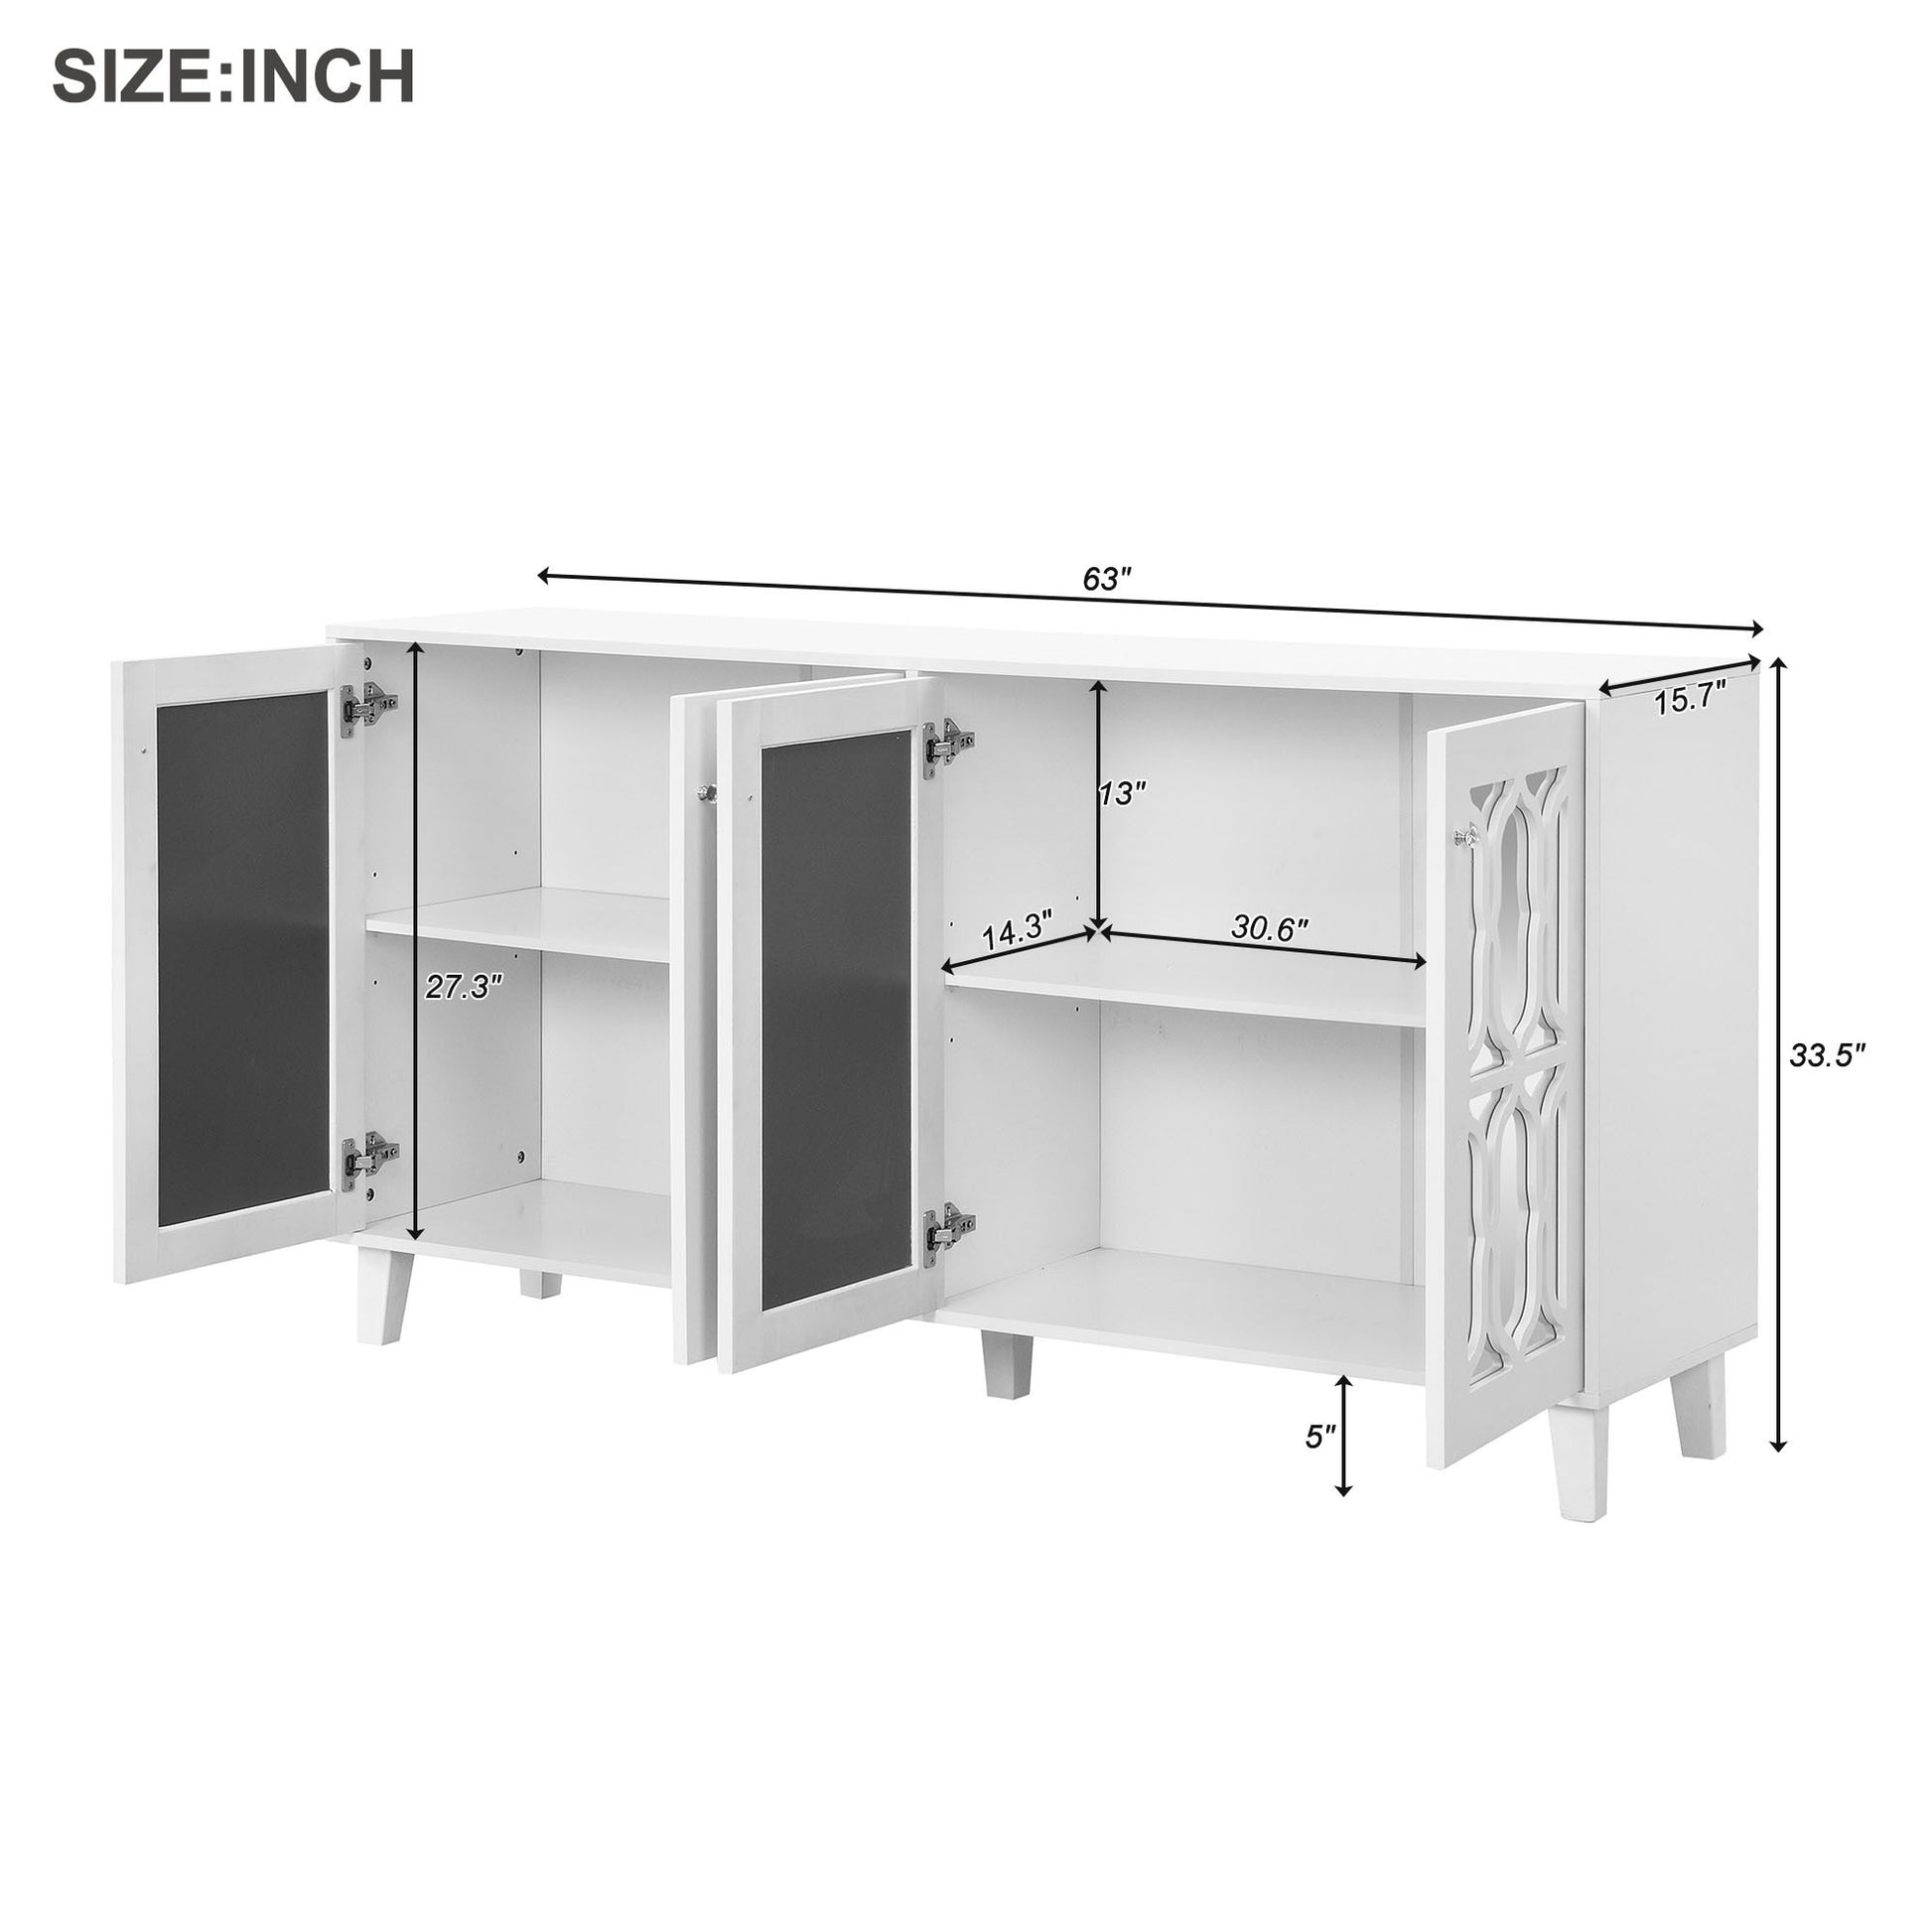 Buffet Cabinet With Adjustable Shelves, 4 Door